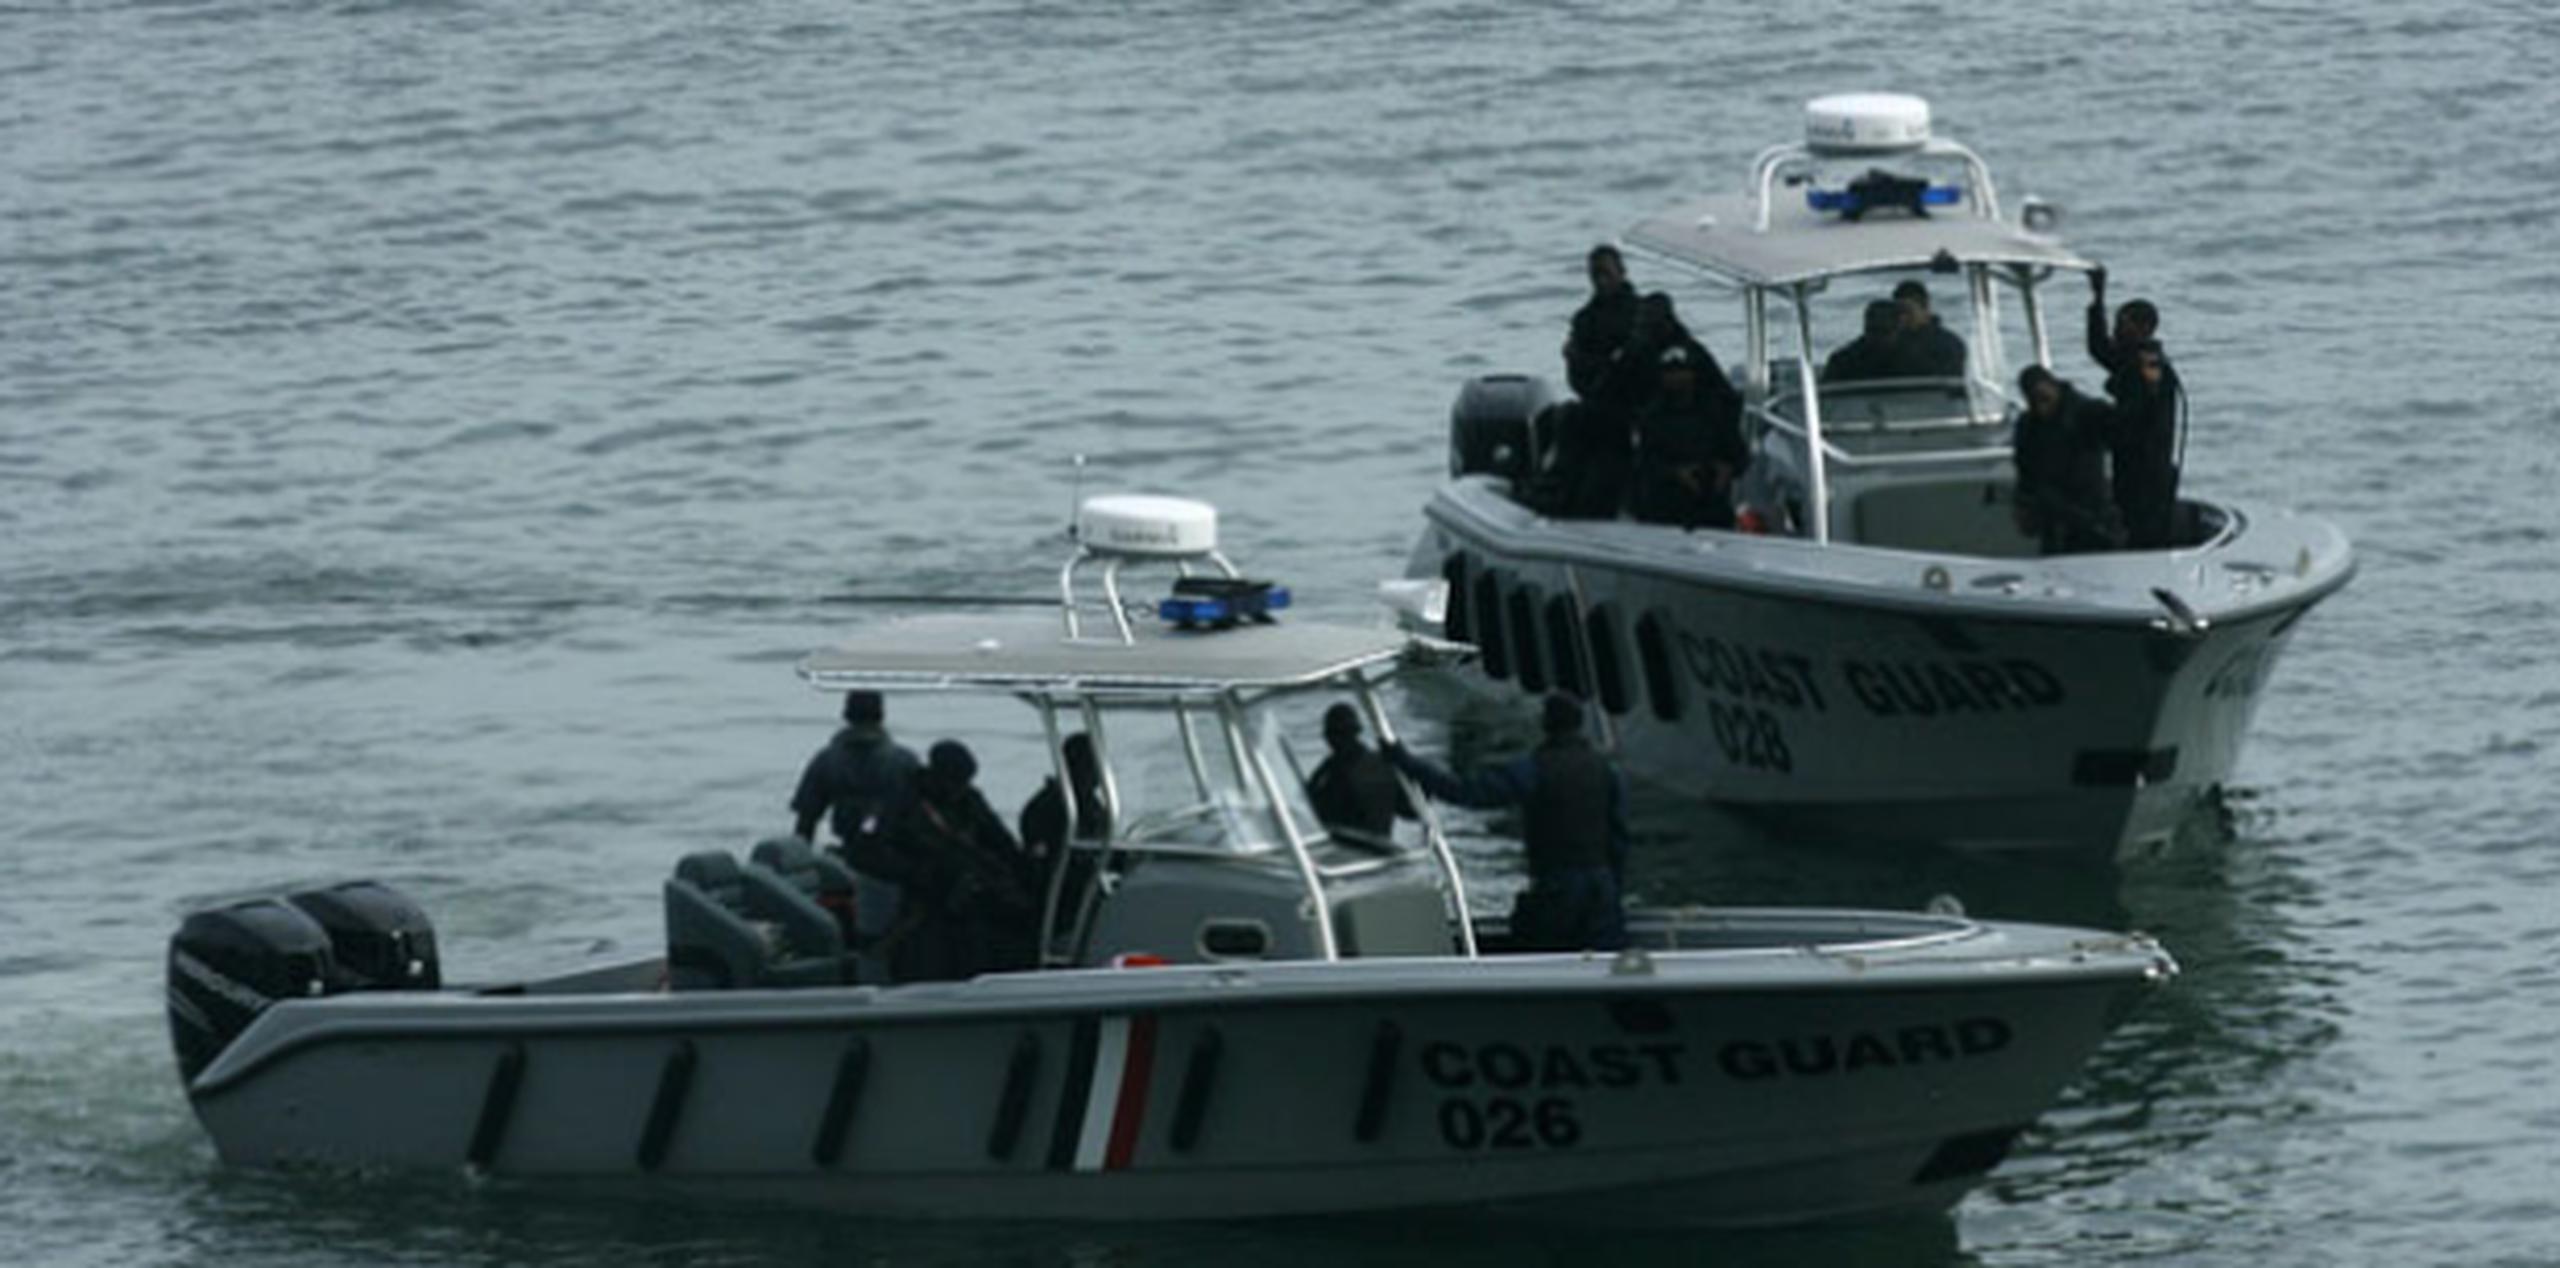 La Guardia Costera se movilizó al recibir petición de ayuda. (Archivo)